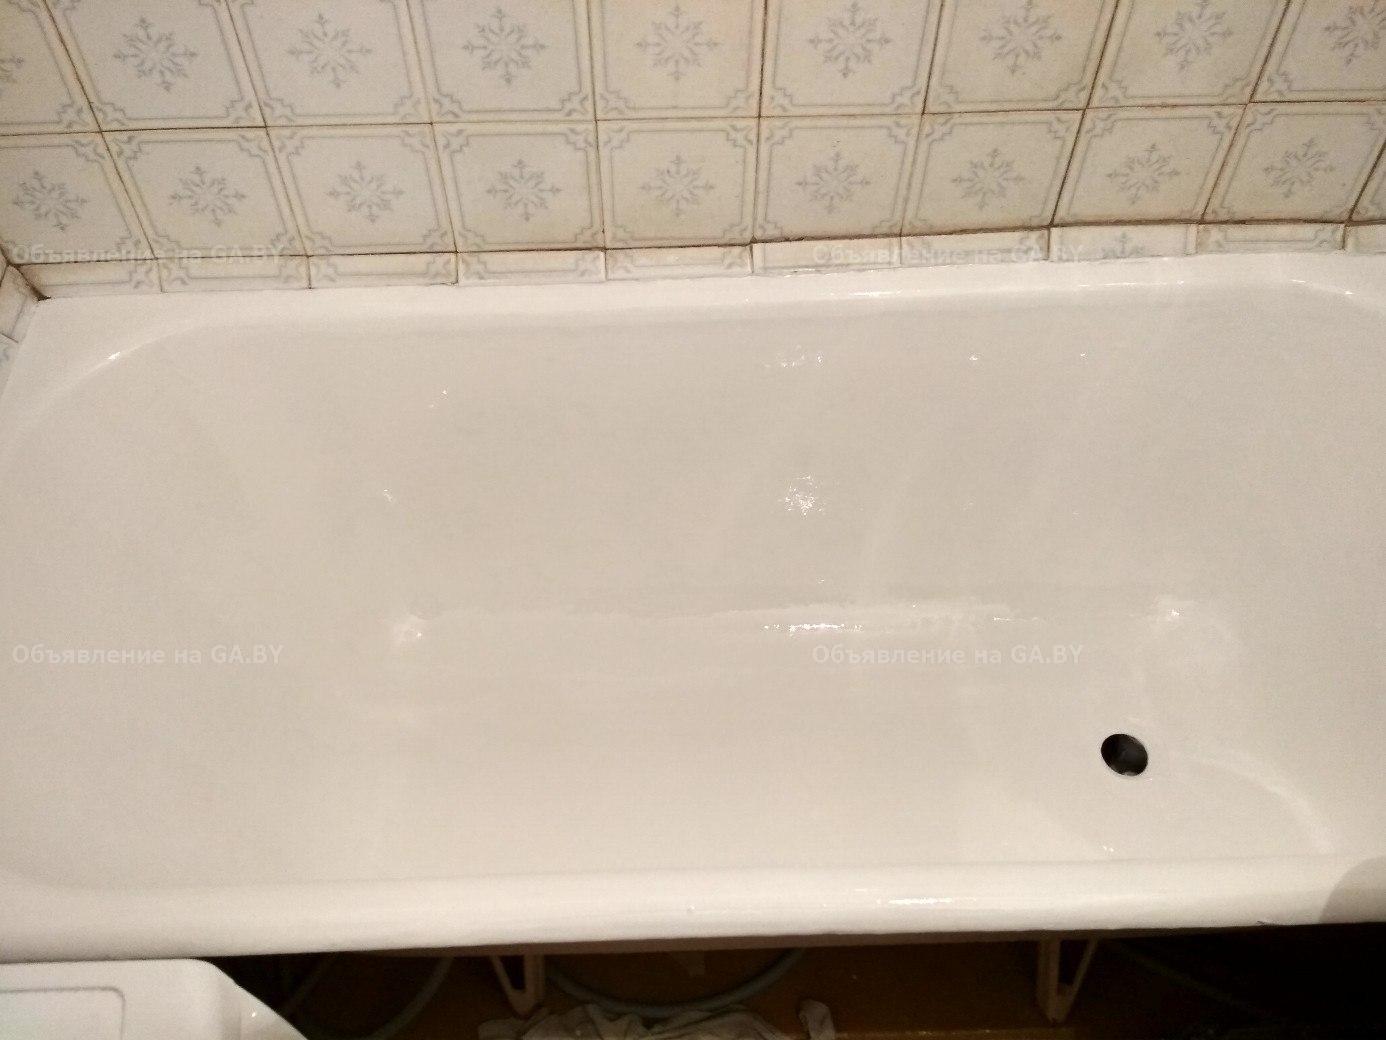 Выполню Реставрация ванн жидким акрилом | Эмалировка ванн - GA.BY